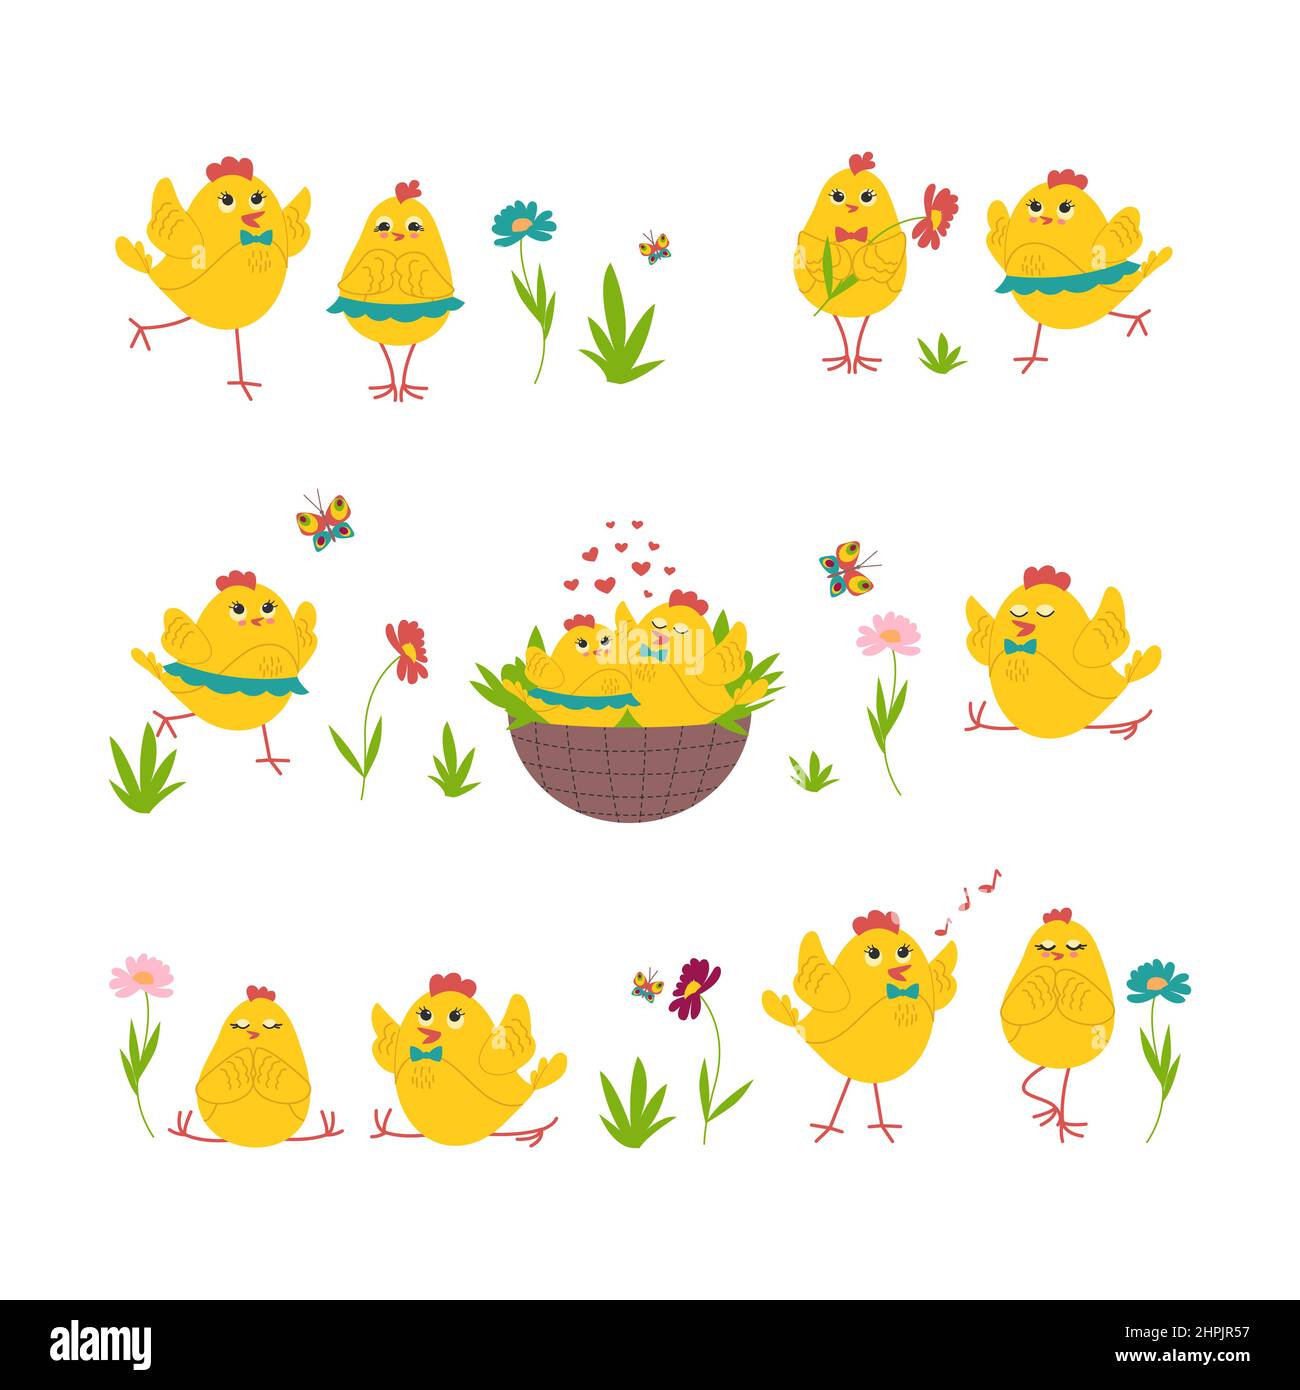 Ensemble de poulets de Pâques mignons, poulets jaunes dans différentes poses, un couple amoureux, faisant du yoga. Illustration vectorielle Illustration de Vecteur